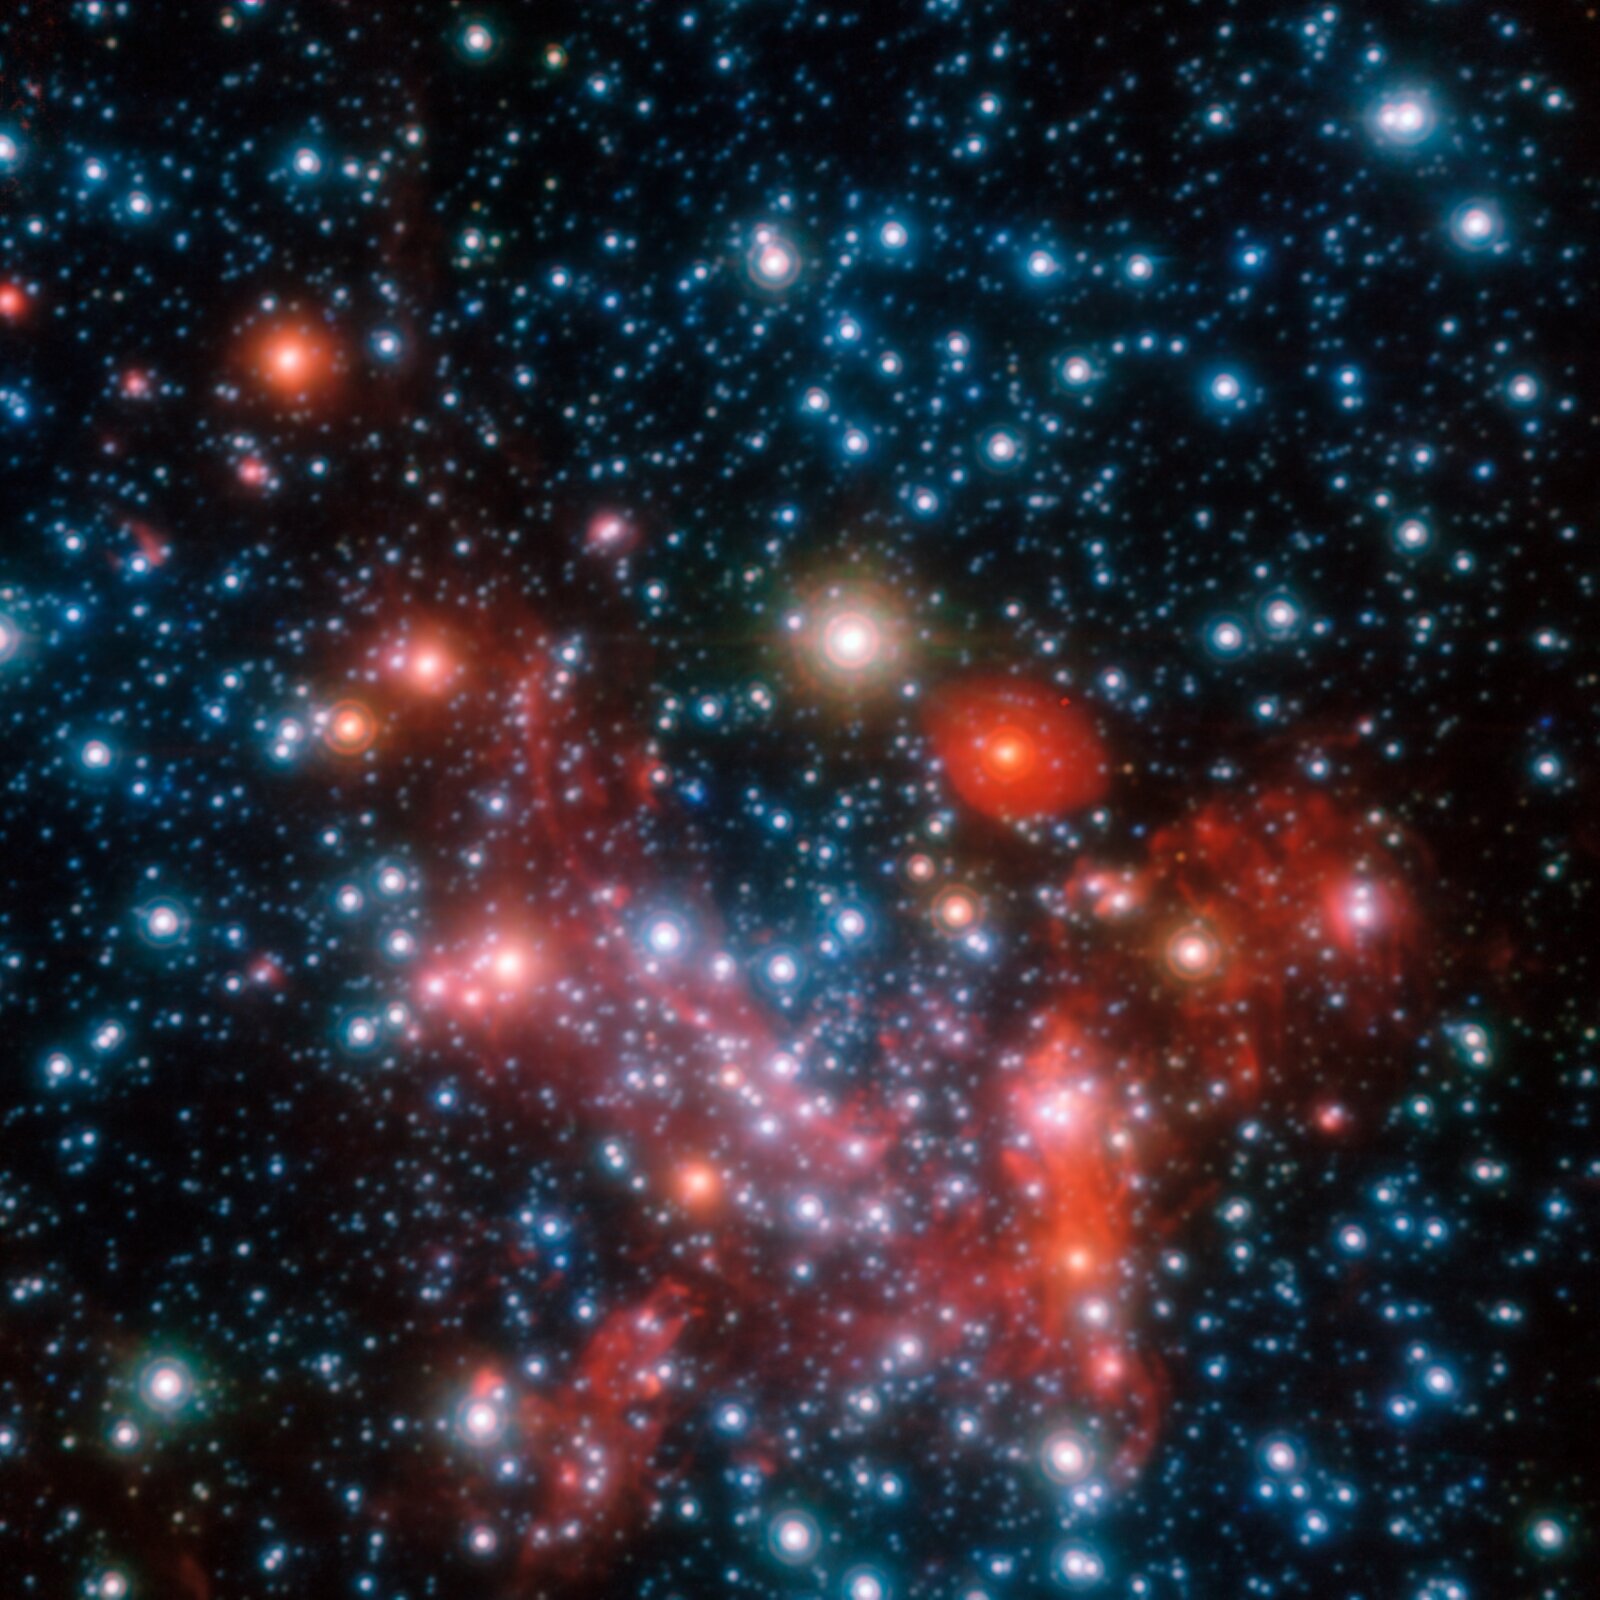 Rys. 4. Zdjęcie z teleskopu pokazuje gwiazdy w centrum Dogi Mlecznej. Ciemne tło gęsto usiane jest jasnymi świetlistymi punktami. W centrum znajduje się kilkanaście skupionych świetlistych, nieco większych, kolistych obiektów w kolorach czerwonym, białym i niebieskim.